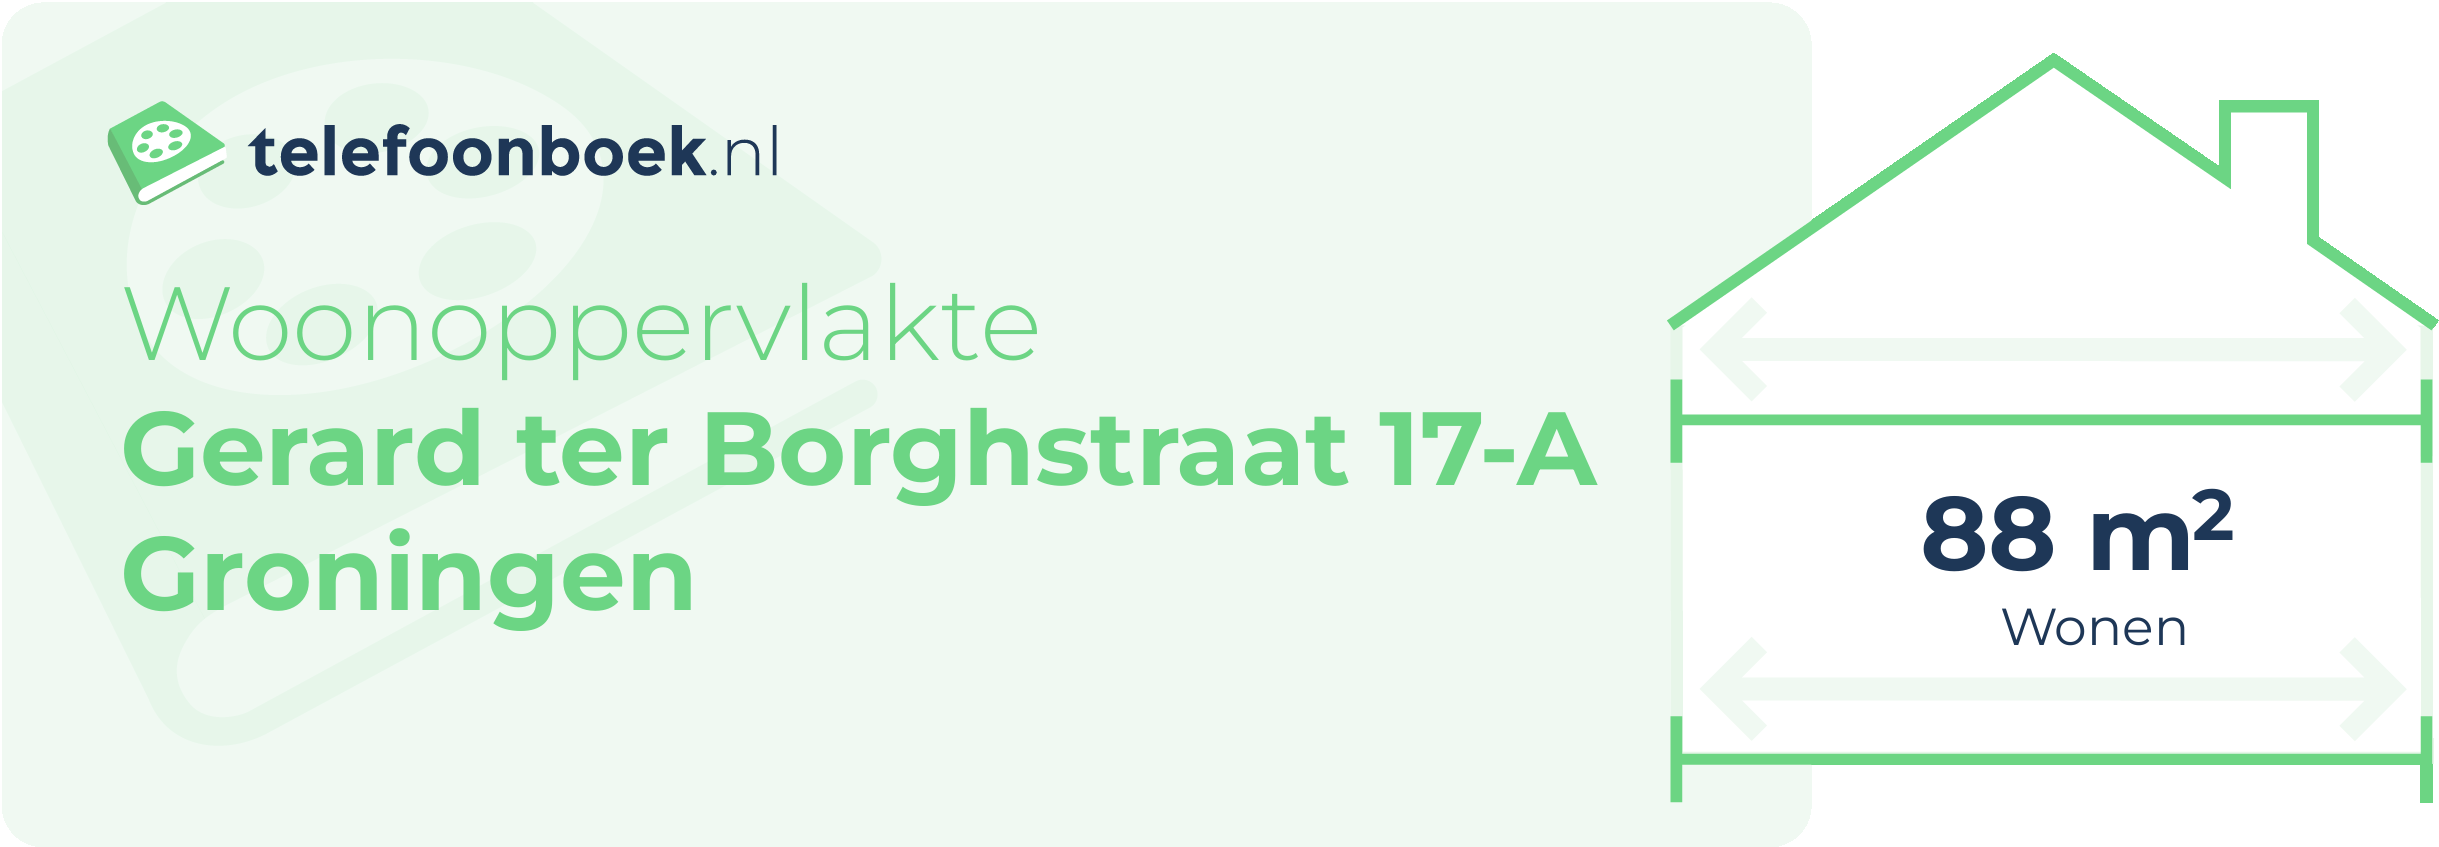 Woonoppervlakte Gerard Ter Borghstraat 17-A Groningen